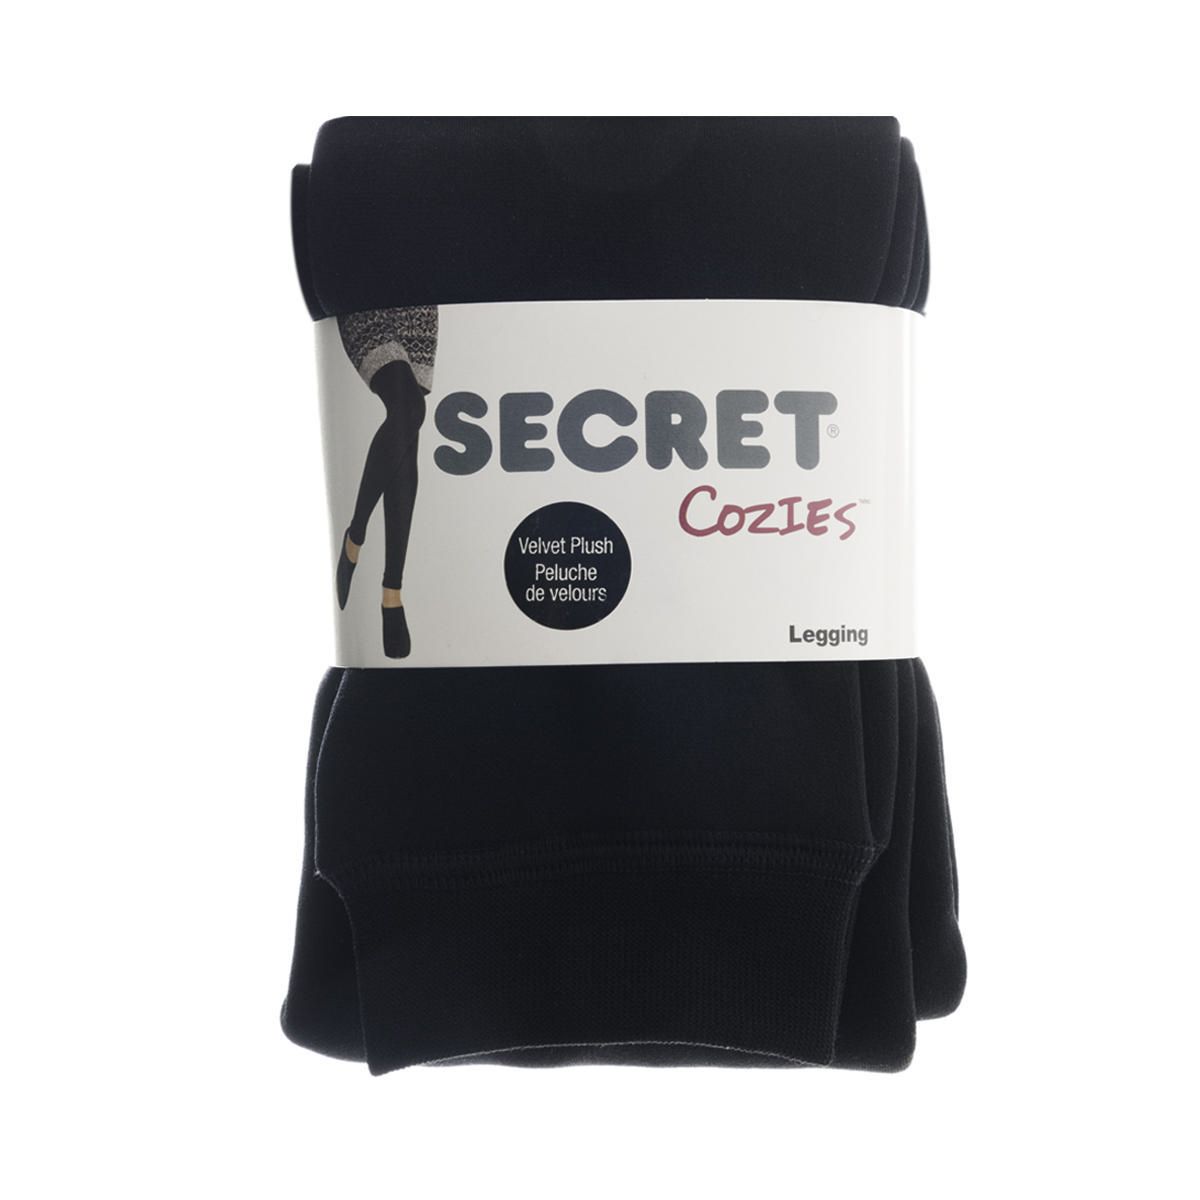 Secret Cozies Velvet Plush Legging 